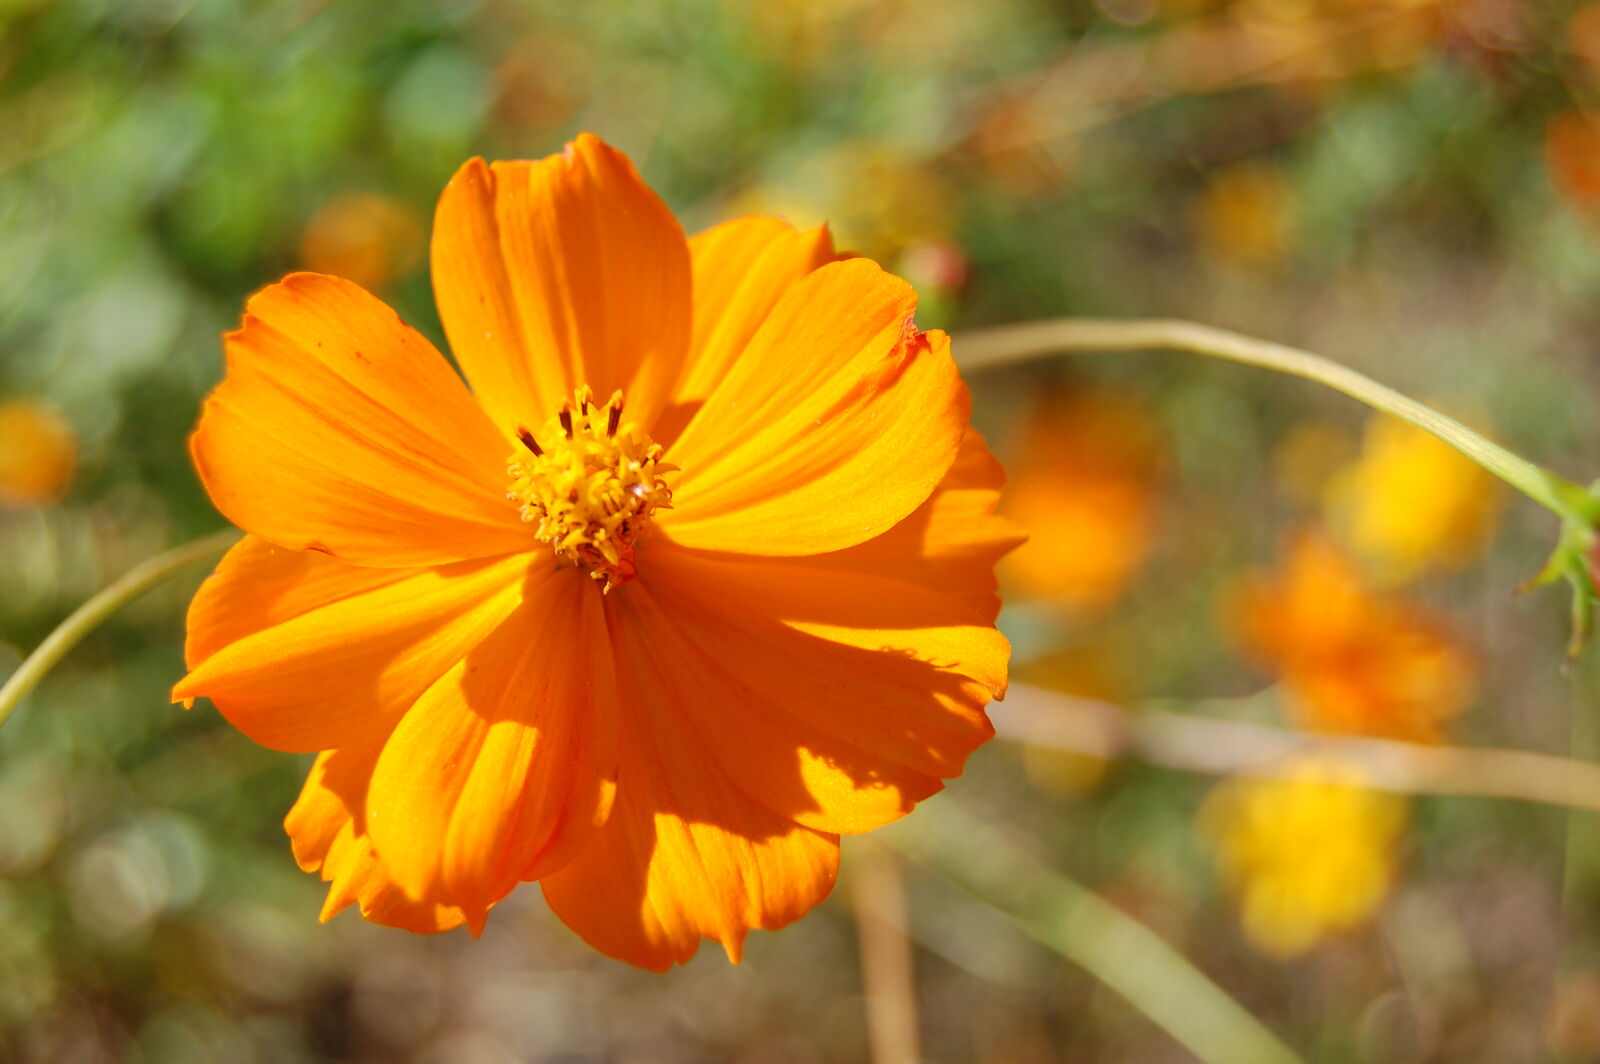 Nikon D50 + AF-S DX Zoom-Nikkor 18-55mm f/3.5-5.6G ED sample photo. Orange, orange, flower photography